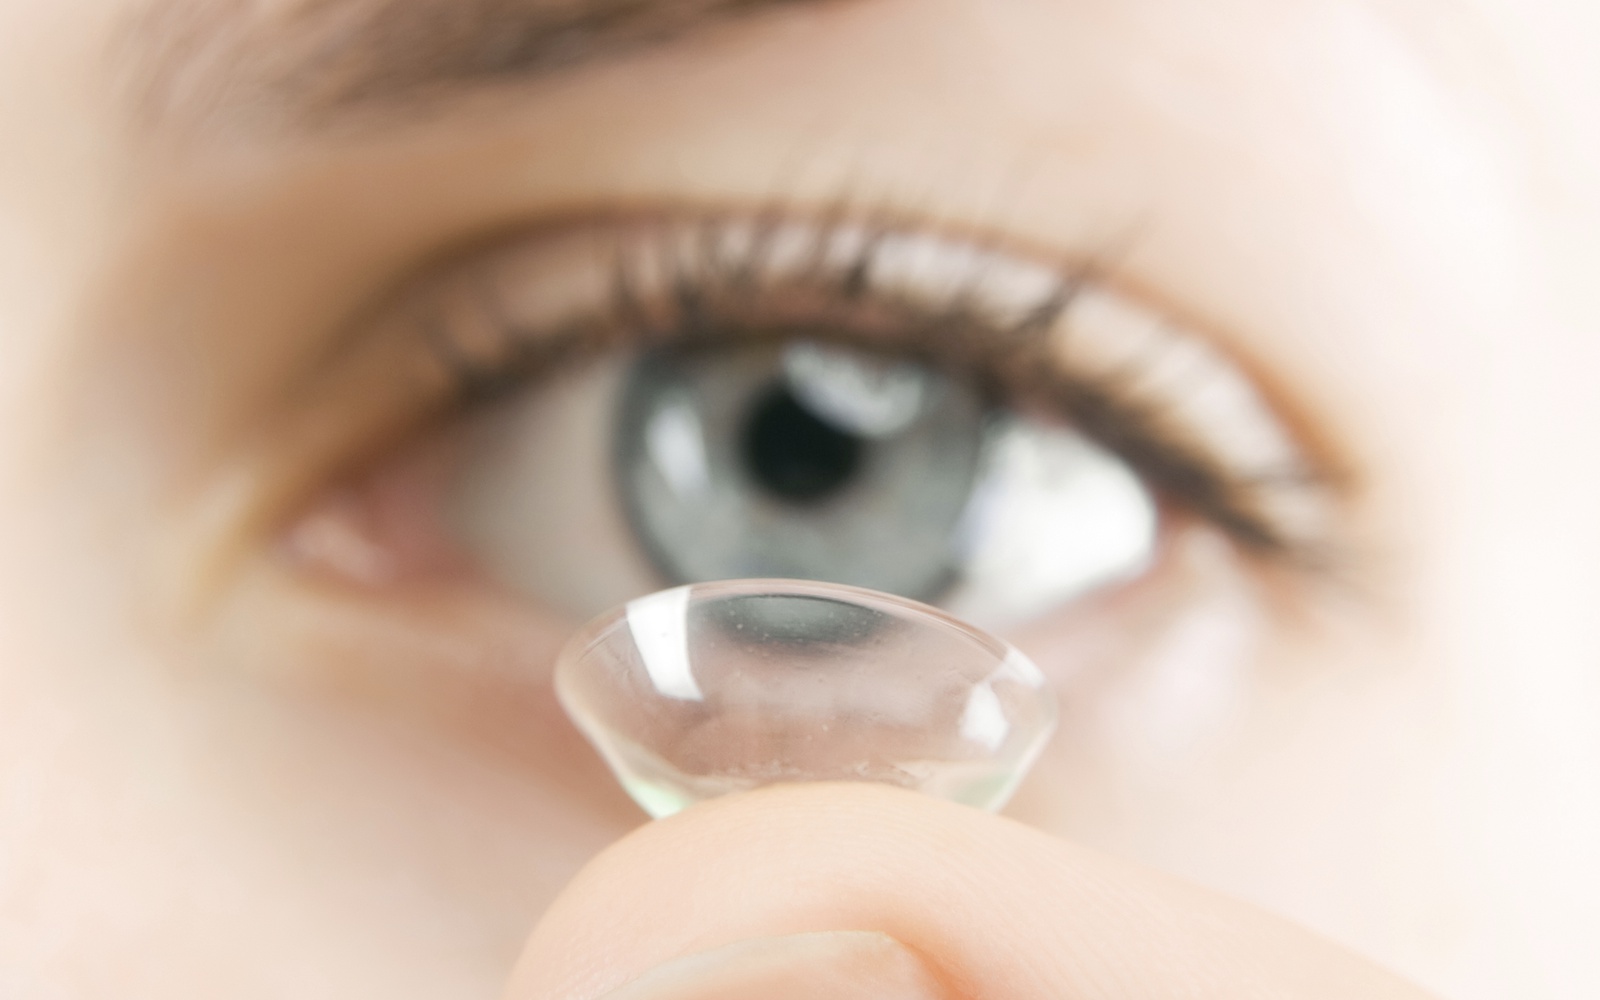 Kontaktlinsenträger sollten trotz Krise nicht nachlässig werden